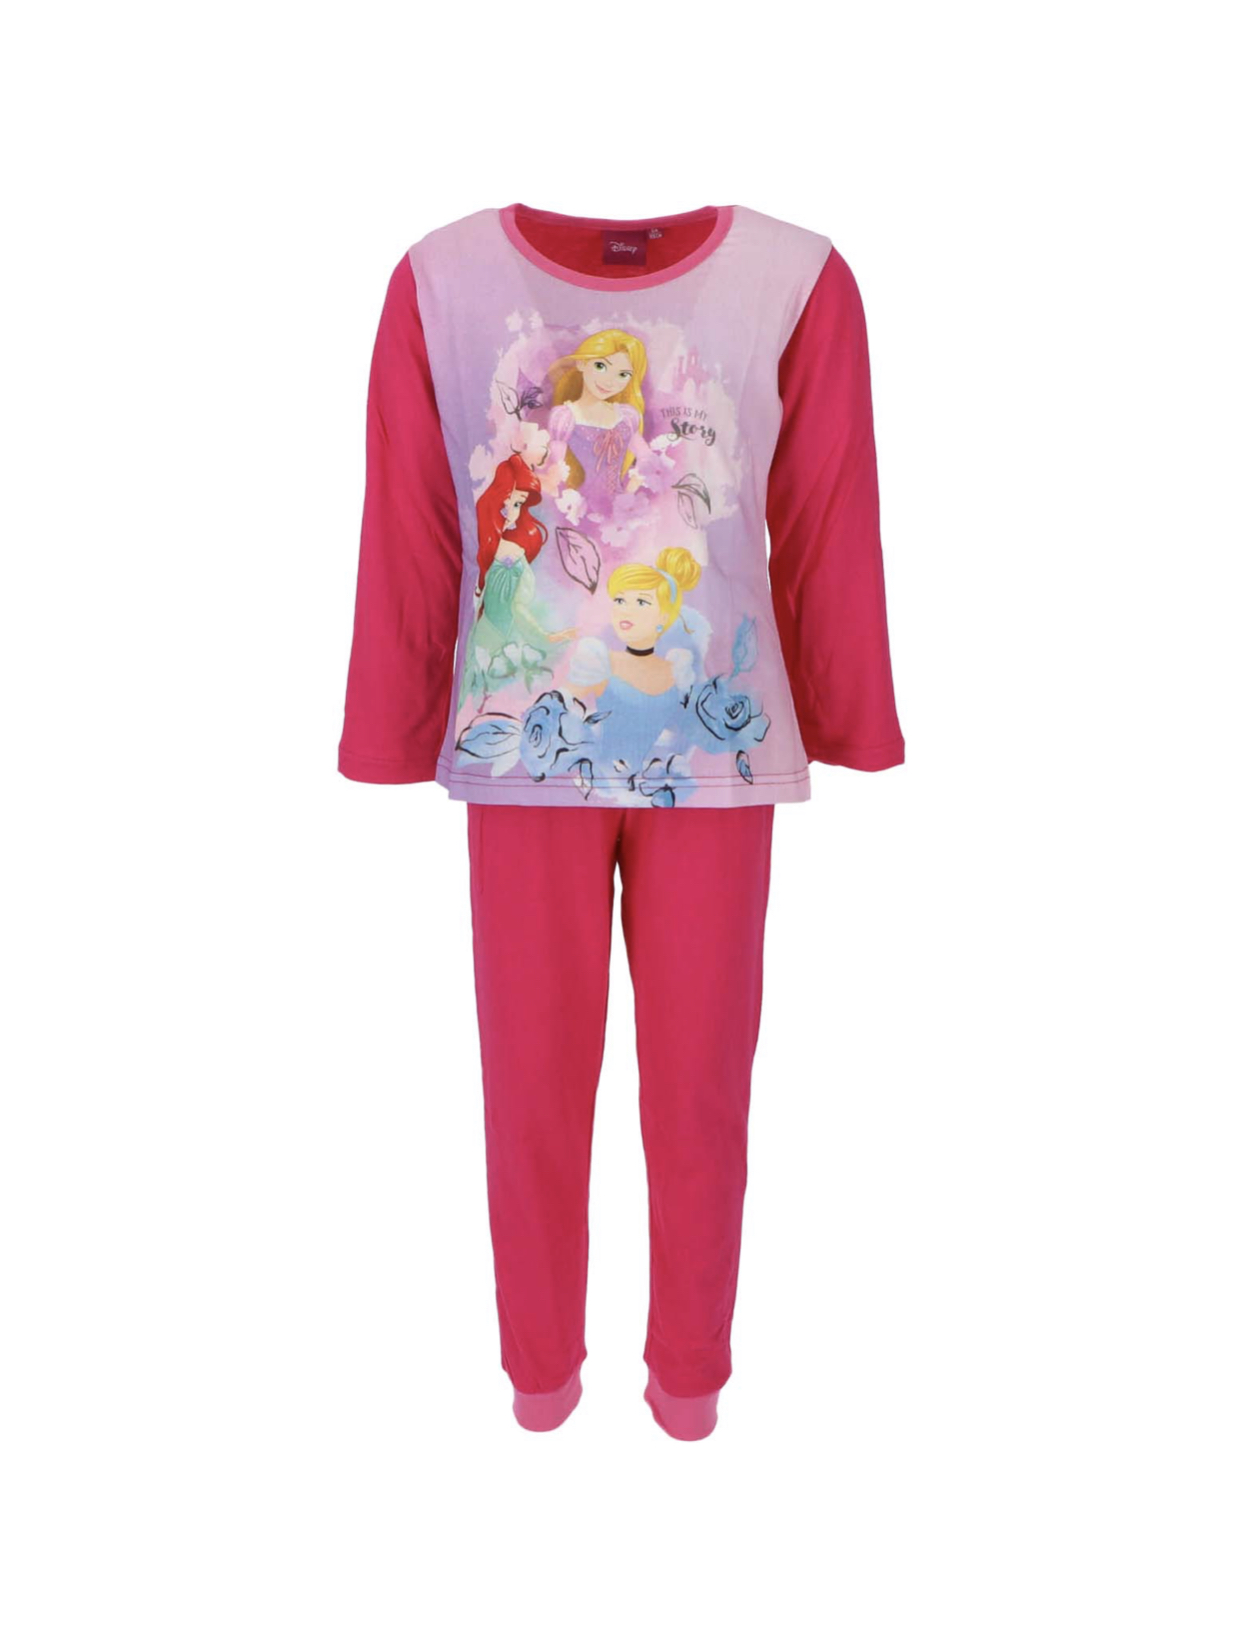 Disney prinsess pyjamas från Smallstars.se